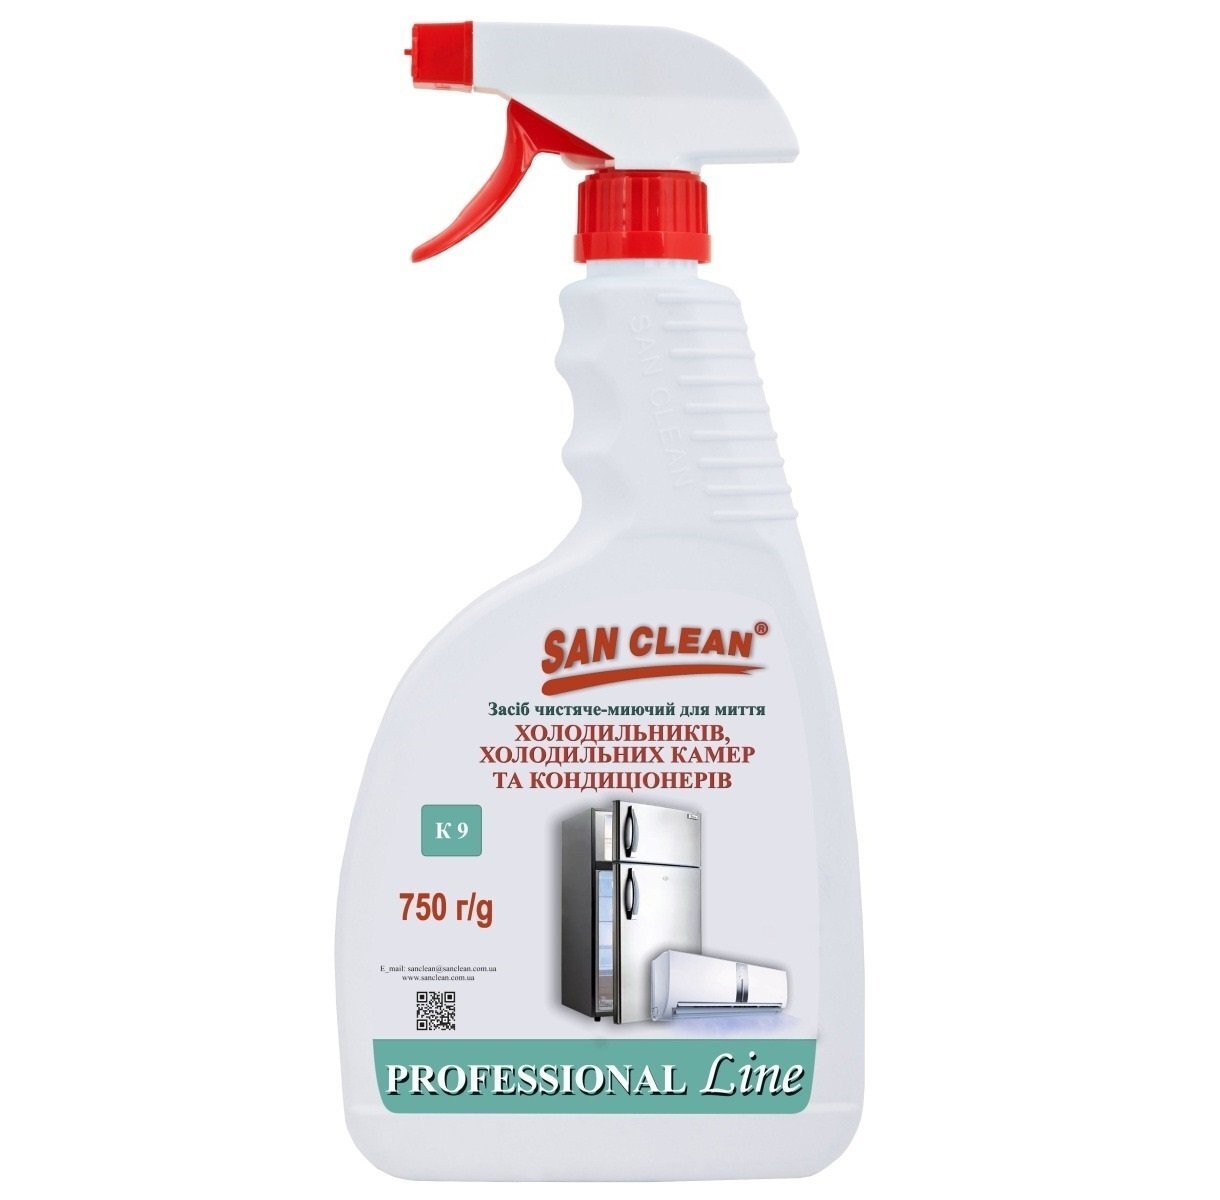 San Clean для холодильников и кондиционеров 750г распылитель фото 1